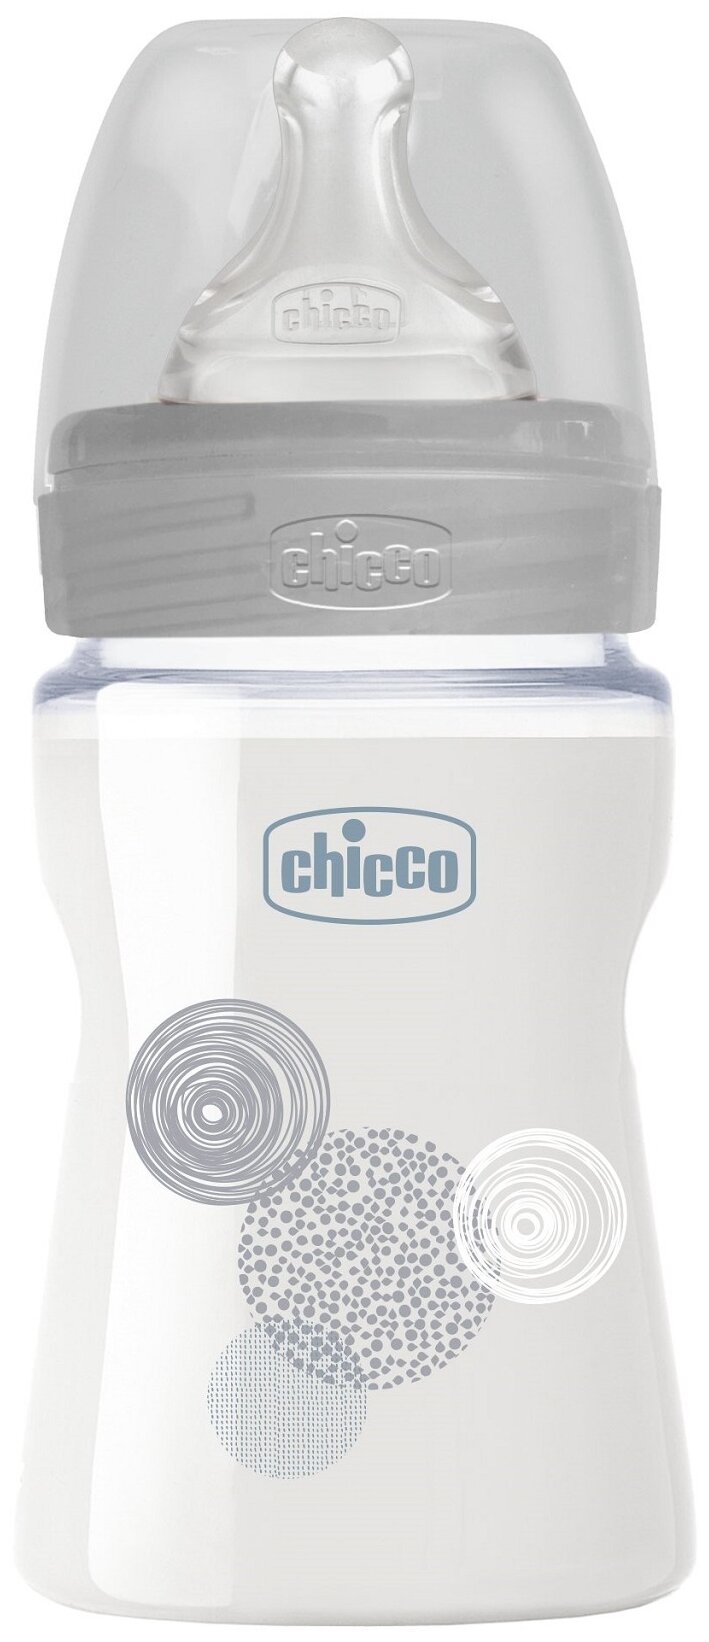 Бутылочка для кормления Chicco Well-Being Uni 0мес.+, с силиконовой соской медленный поток, стекло, 150мл/.бутылка для кормления/для путешествий/бутылочка детская с соской/детская бутылка/для новорожденных/ бутылка для воды детская